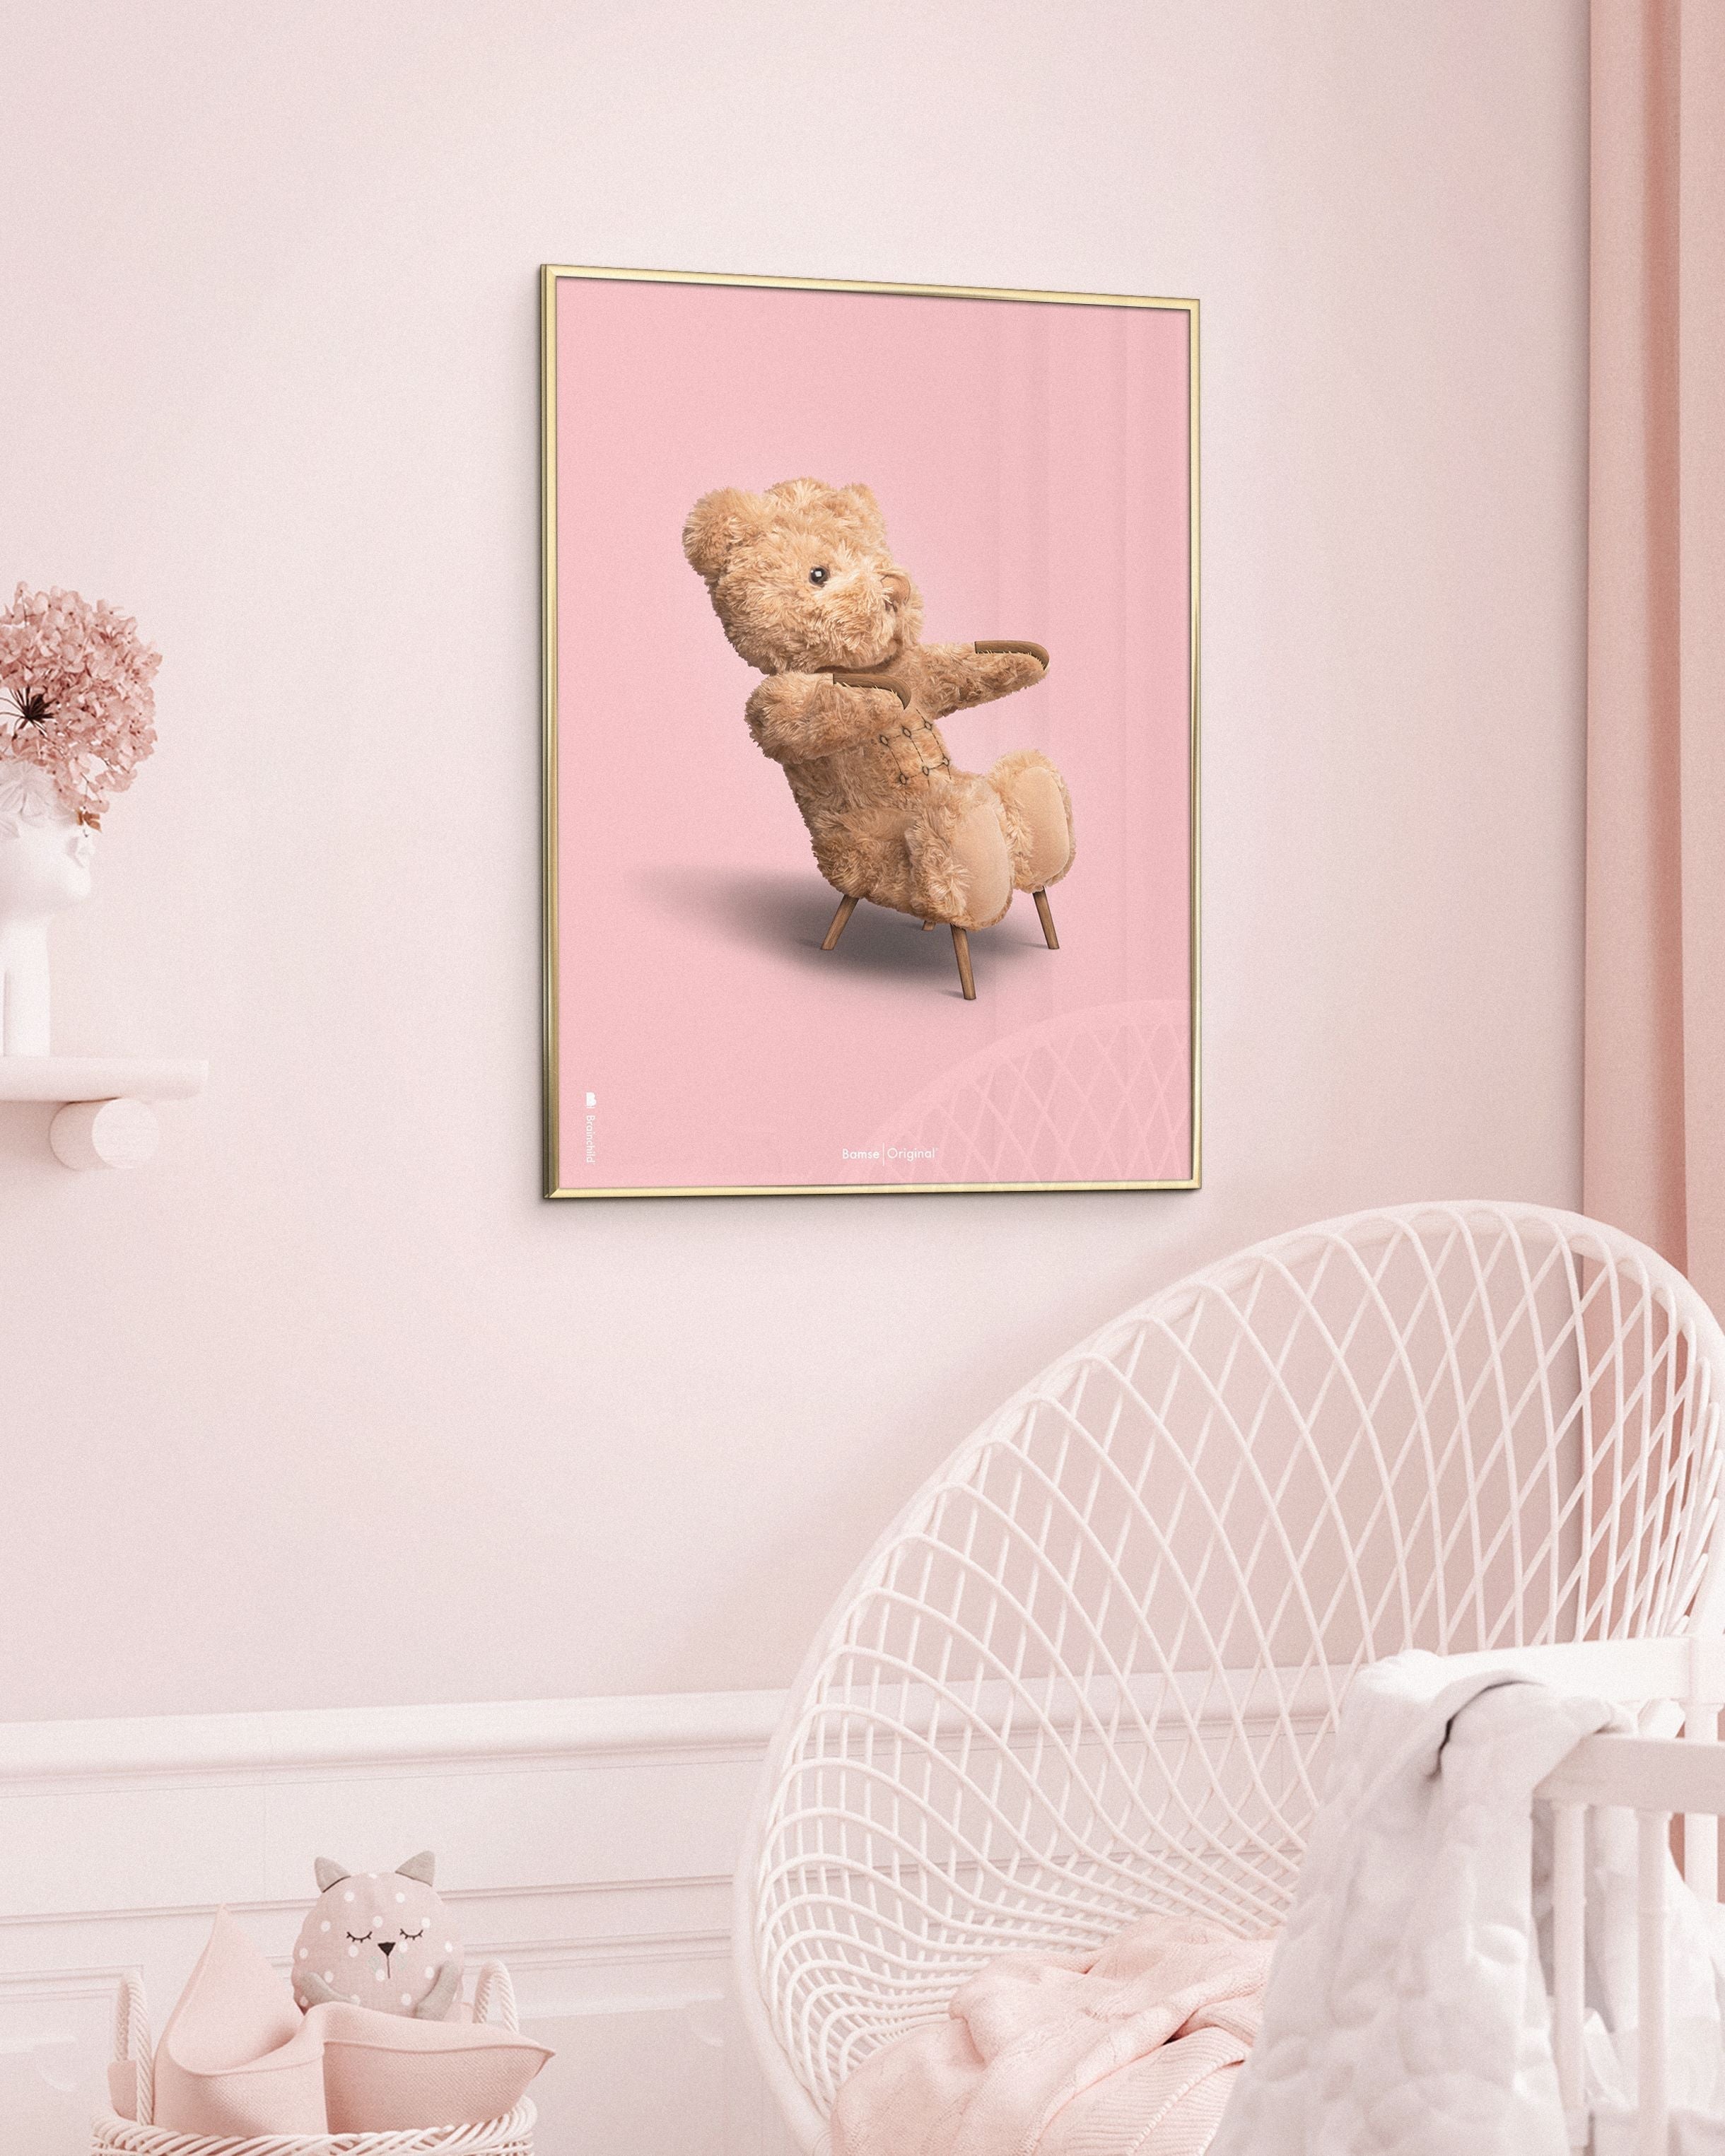 Brainchild Teddy Bear Classic plakát z mosazného barevného rámu 30x40 cm, růžové pozadí